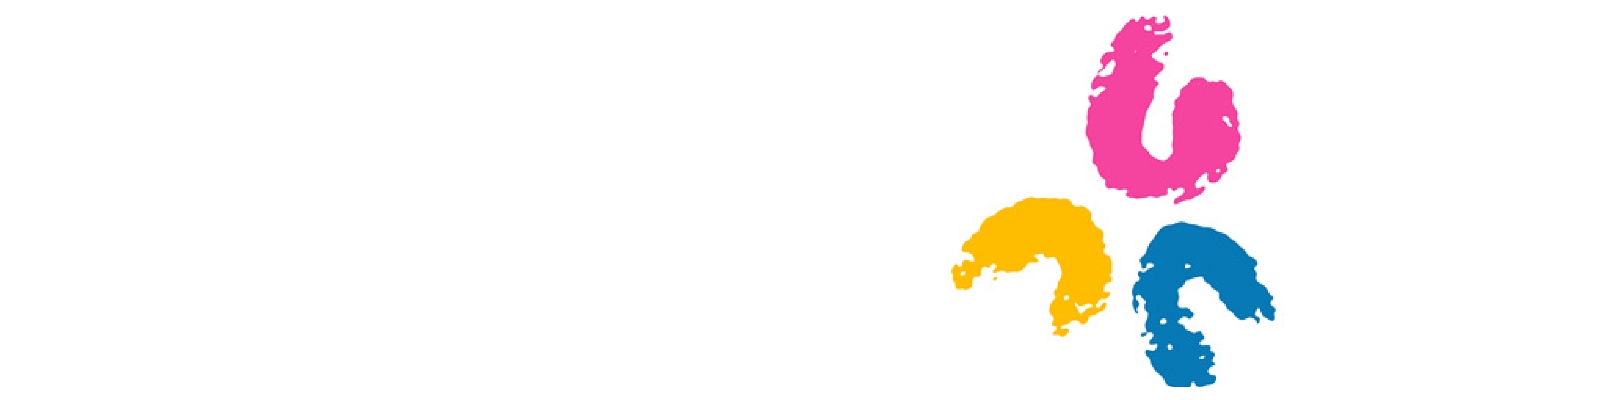 ポータルサイト「ゆうゆうゆう」のロゴ